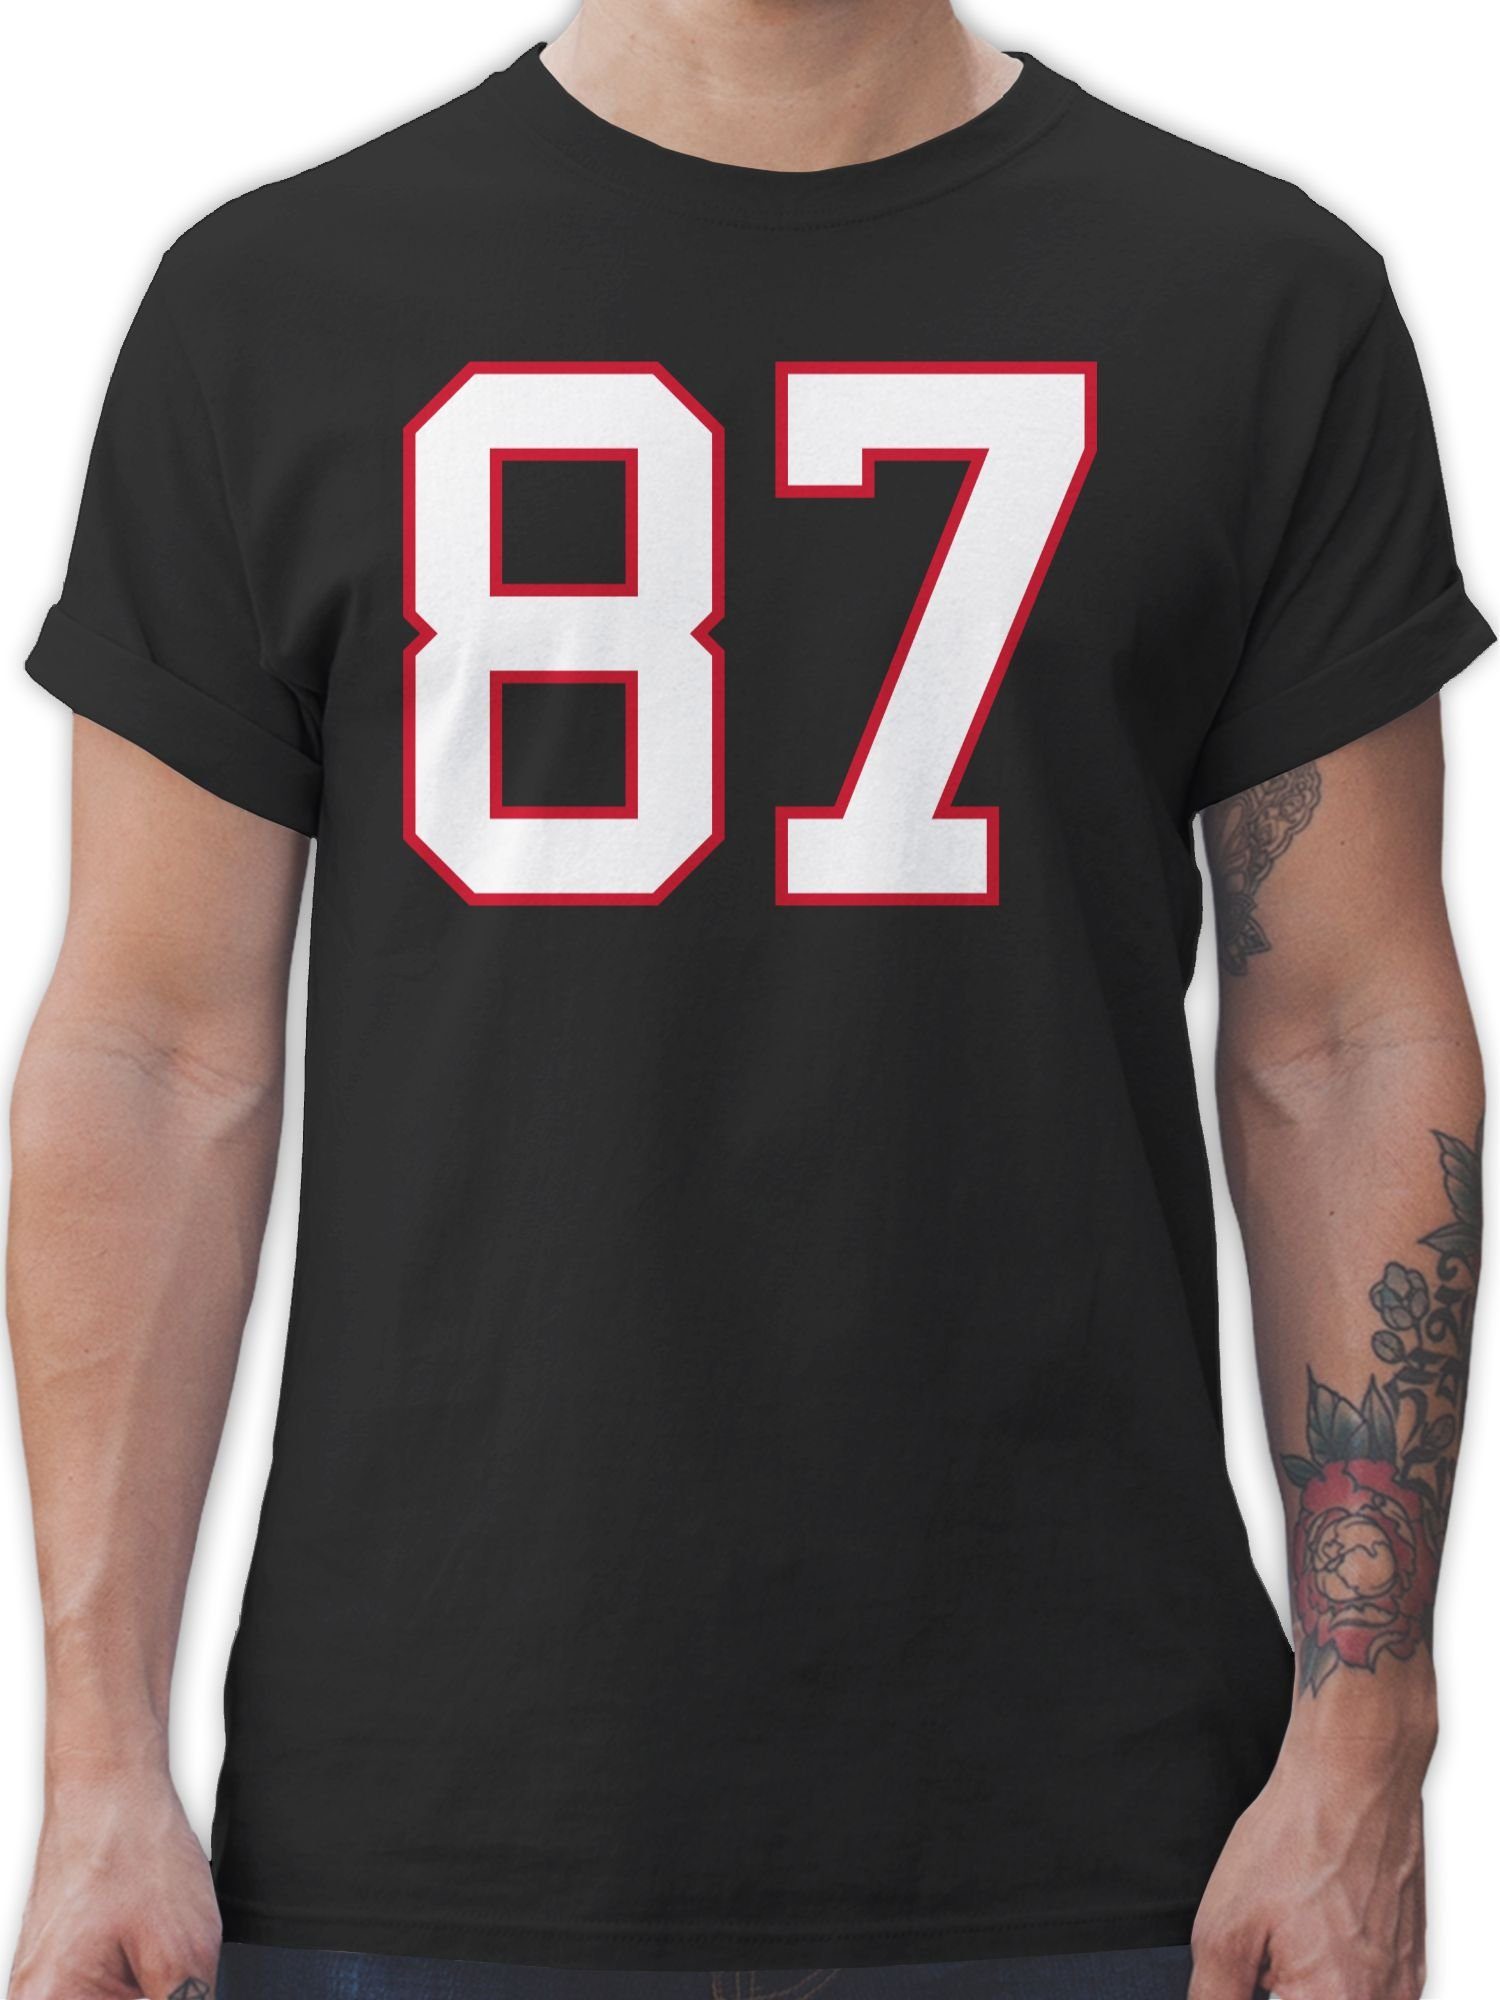 Football New T-Shirt England Shirtracer NFL 87 1 American Football Schwarz